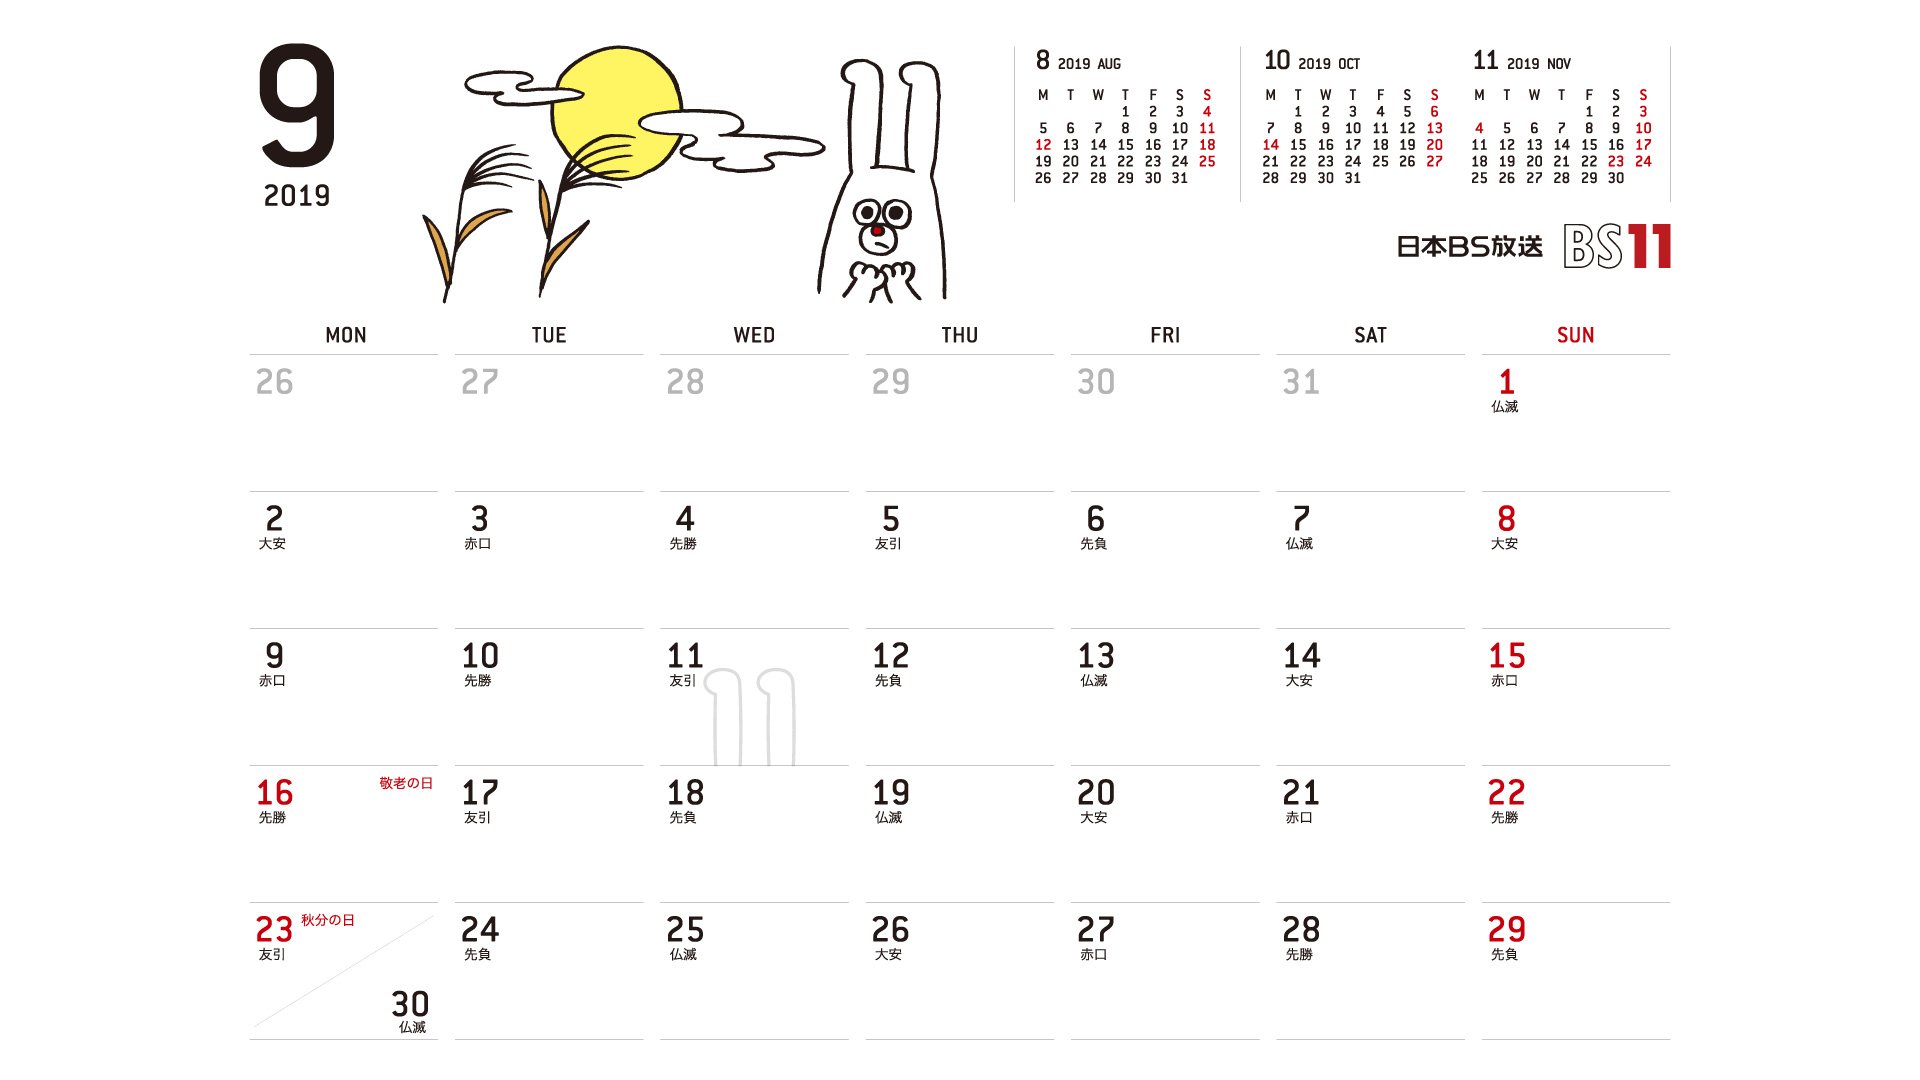 じゅういっちゃんのデジタルカレンダー2019年09月 Bs11 イレブン いつでも無料放送